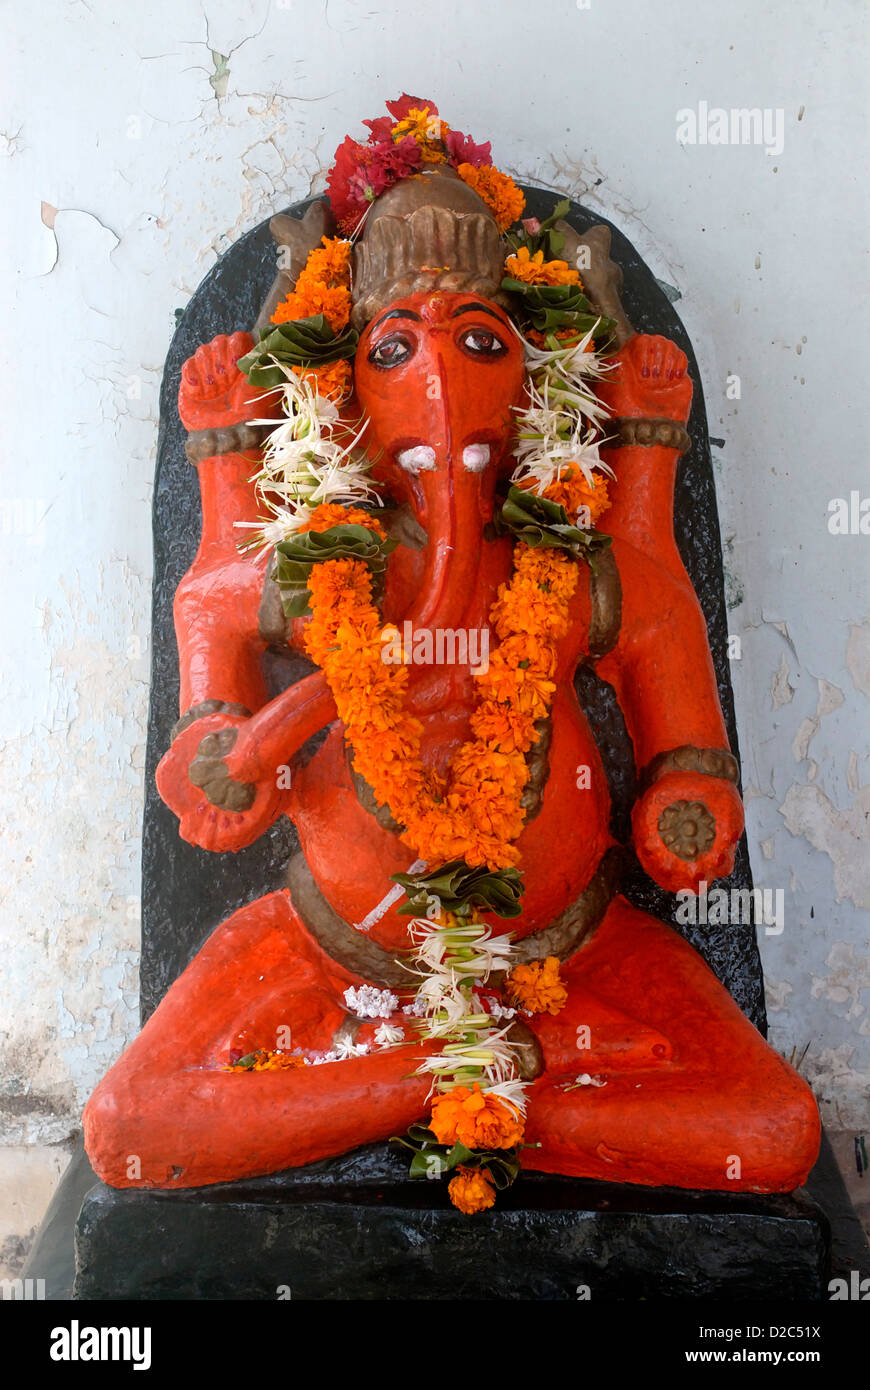 Le Dieu Ganesh, dieu éléphant dirigé, couleur écarlate, Vajreshwari, district thane, Maharashtra, Inde, Asie Banque D'Images